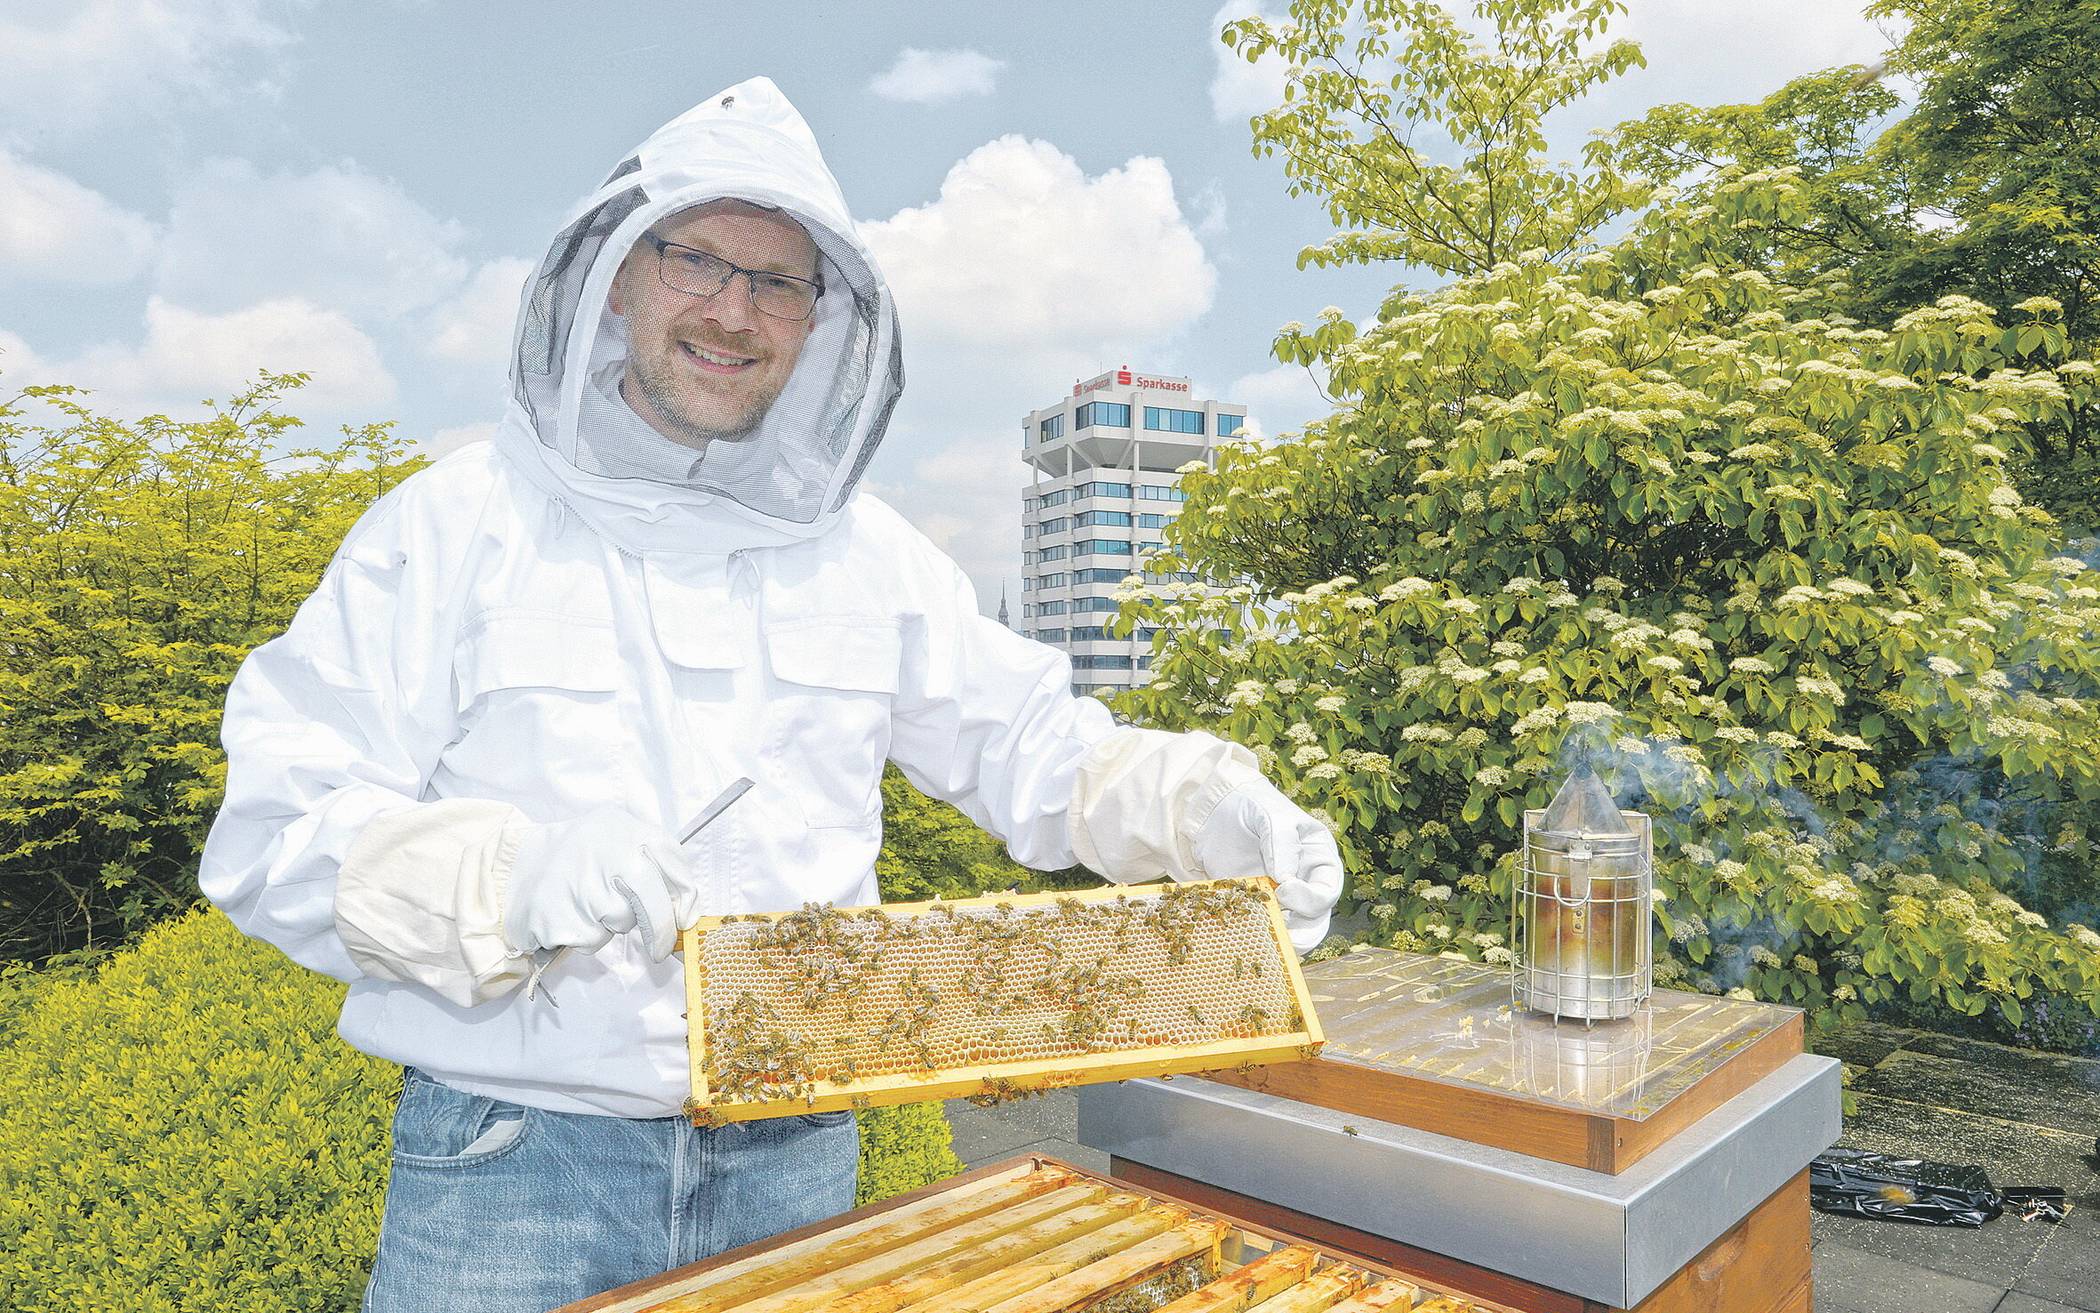  Um dem Bienensterben entgegenzuwirken, hat die Sparkasse Wuppertal auf dem Dach des Neubaus in Elberfeld Bienen angesiedelt. 